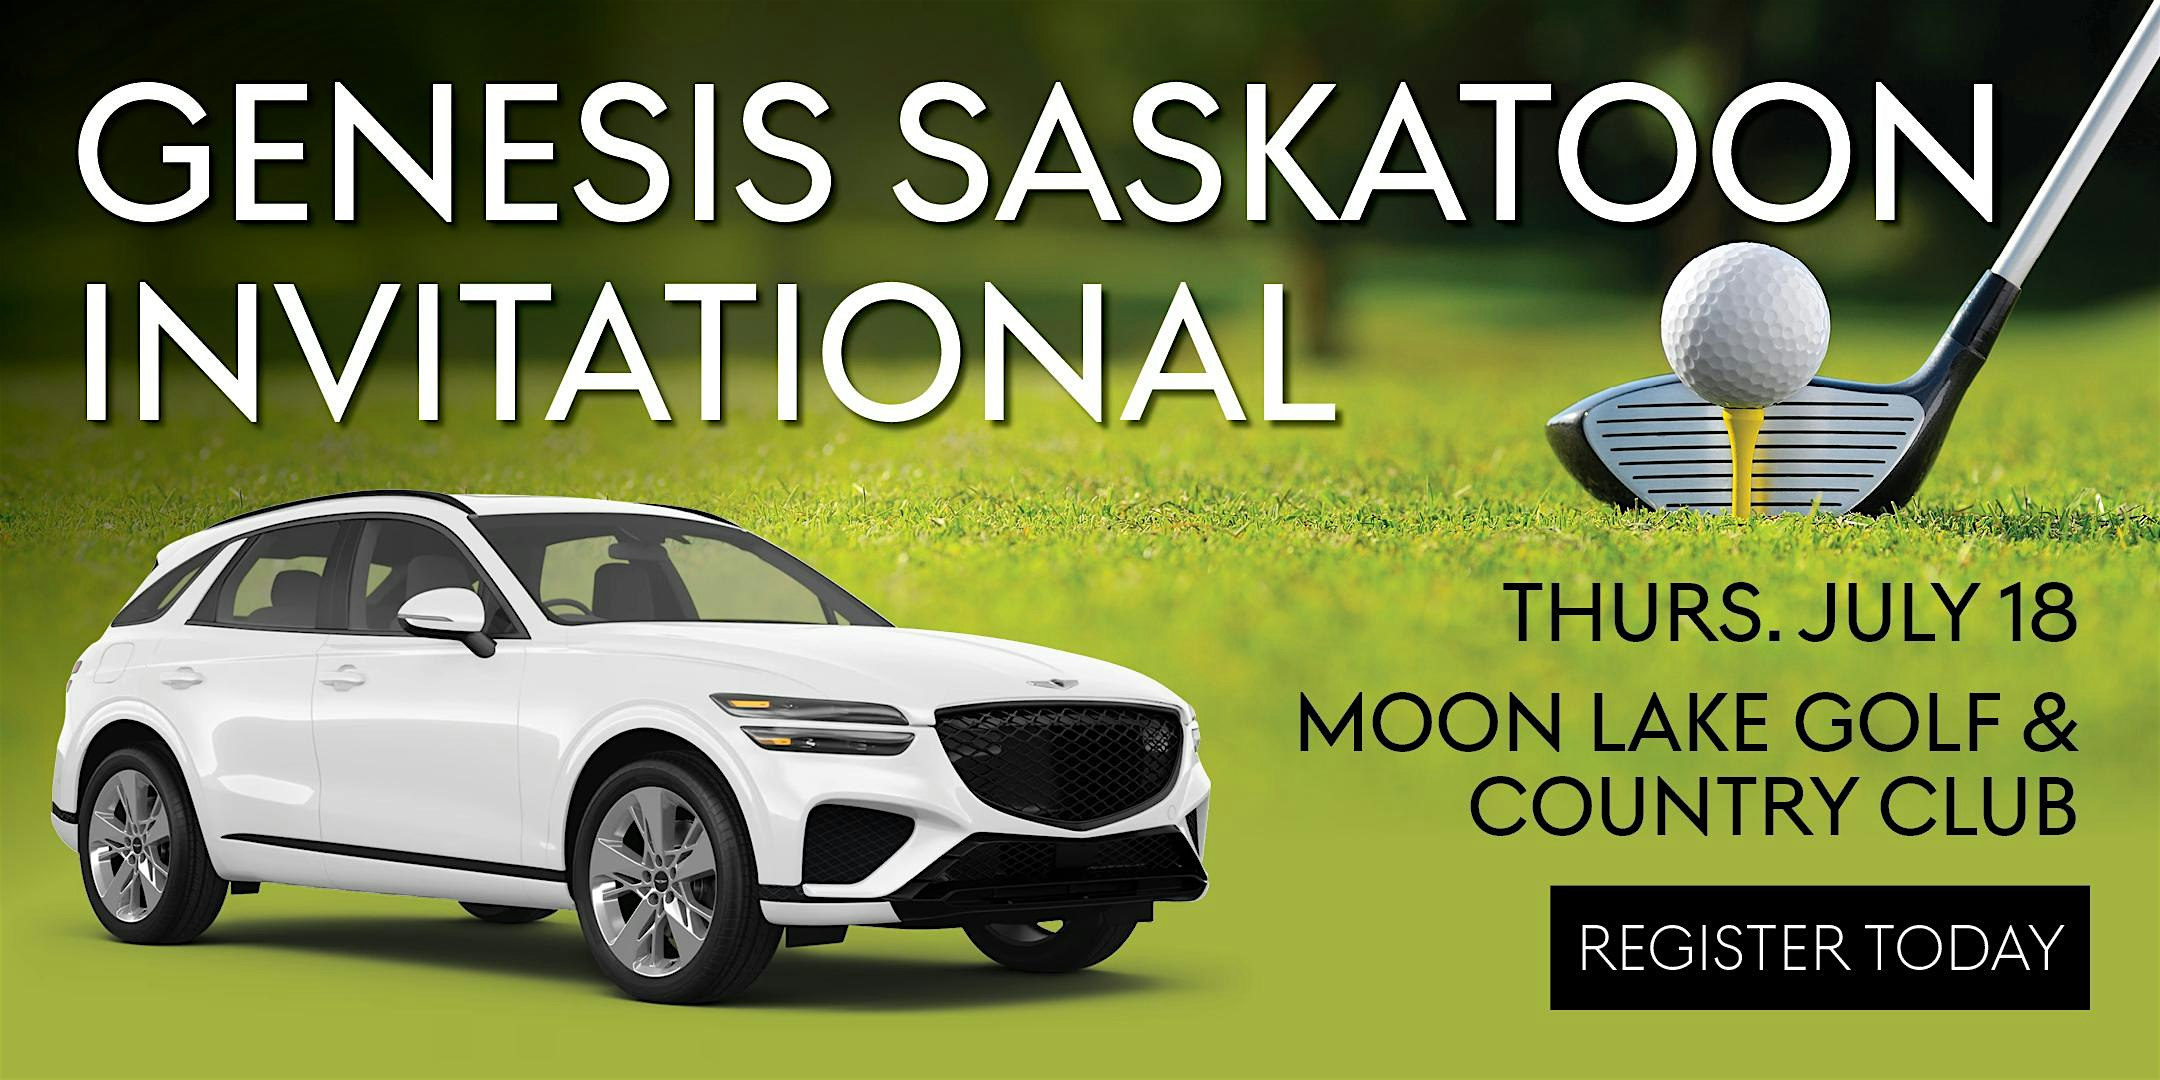 Genesis Saskatoon Invitational